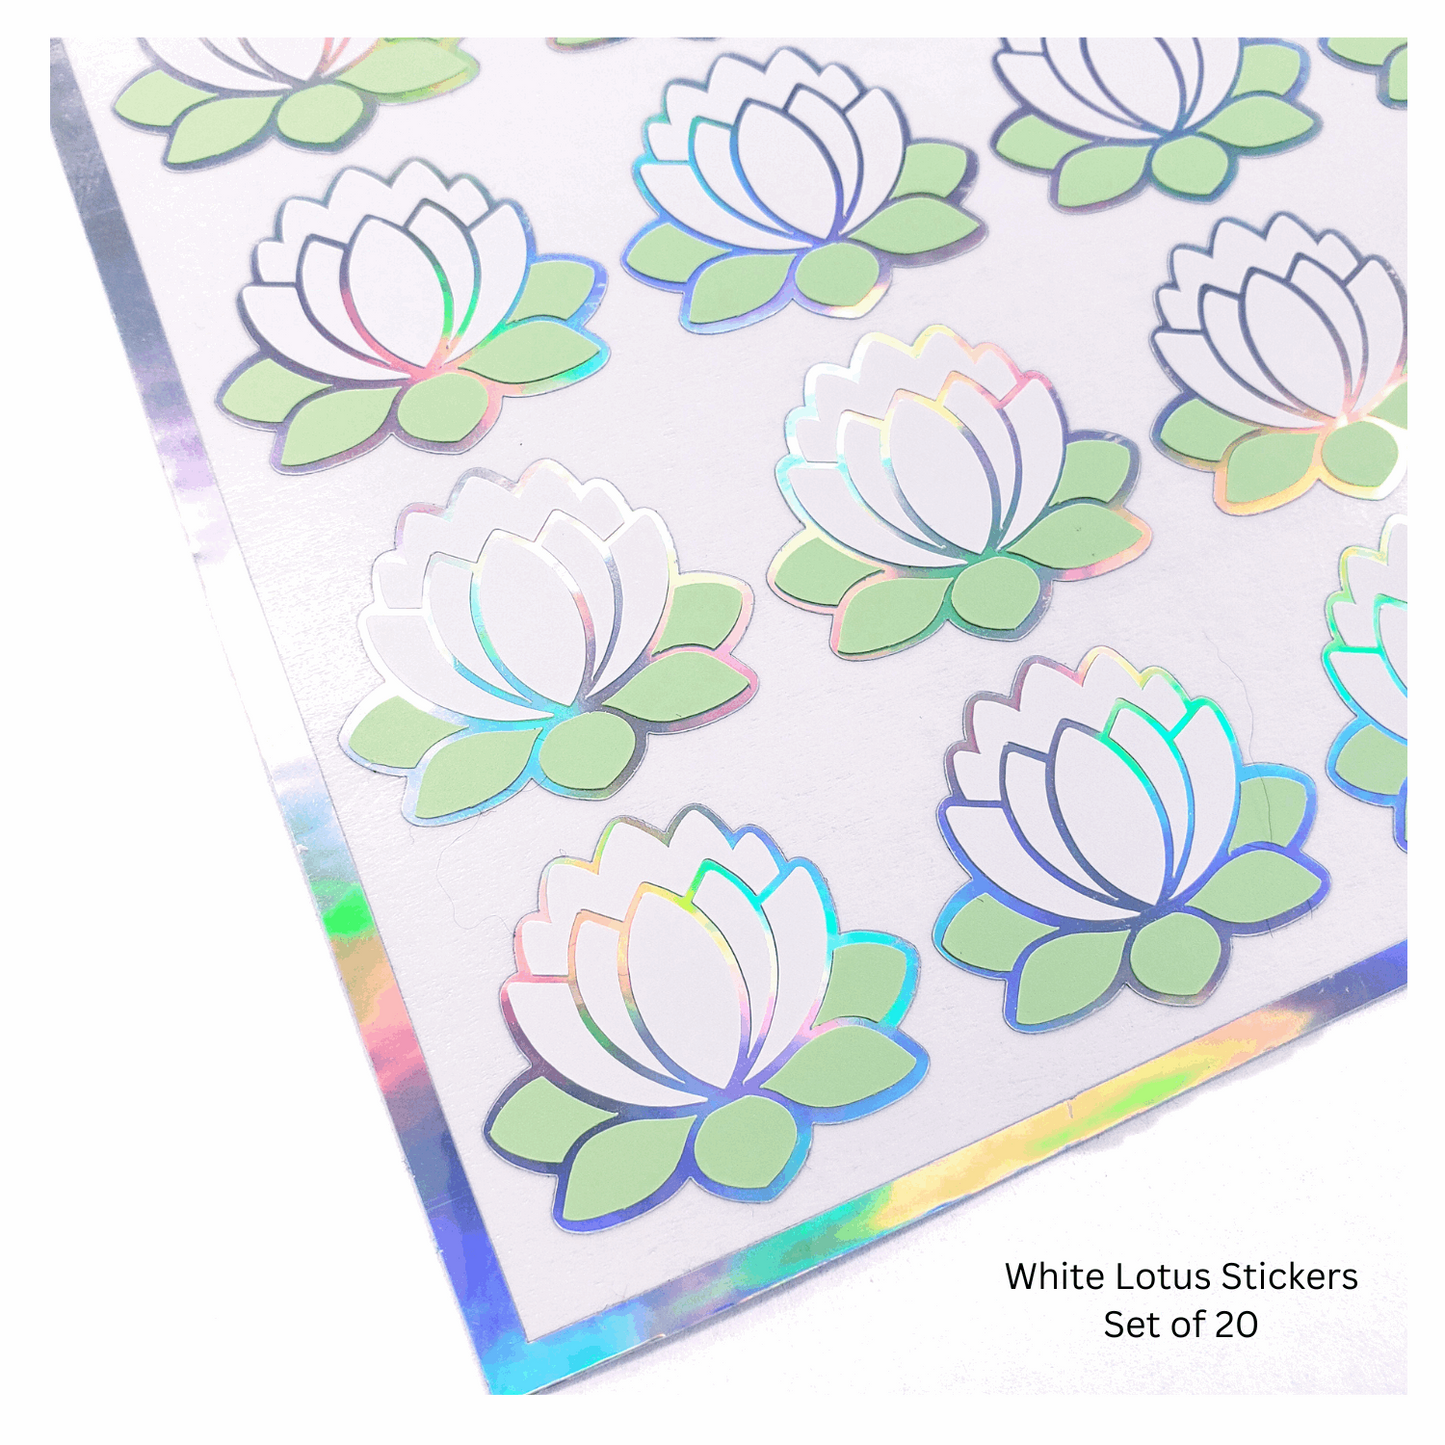 White Lotus Stickers, set of 20